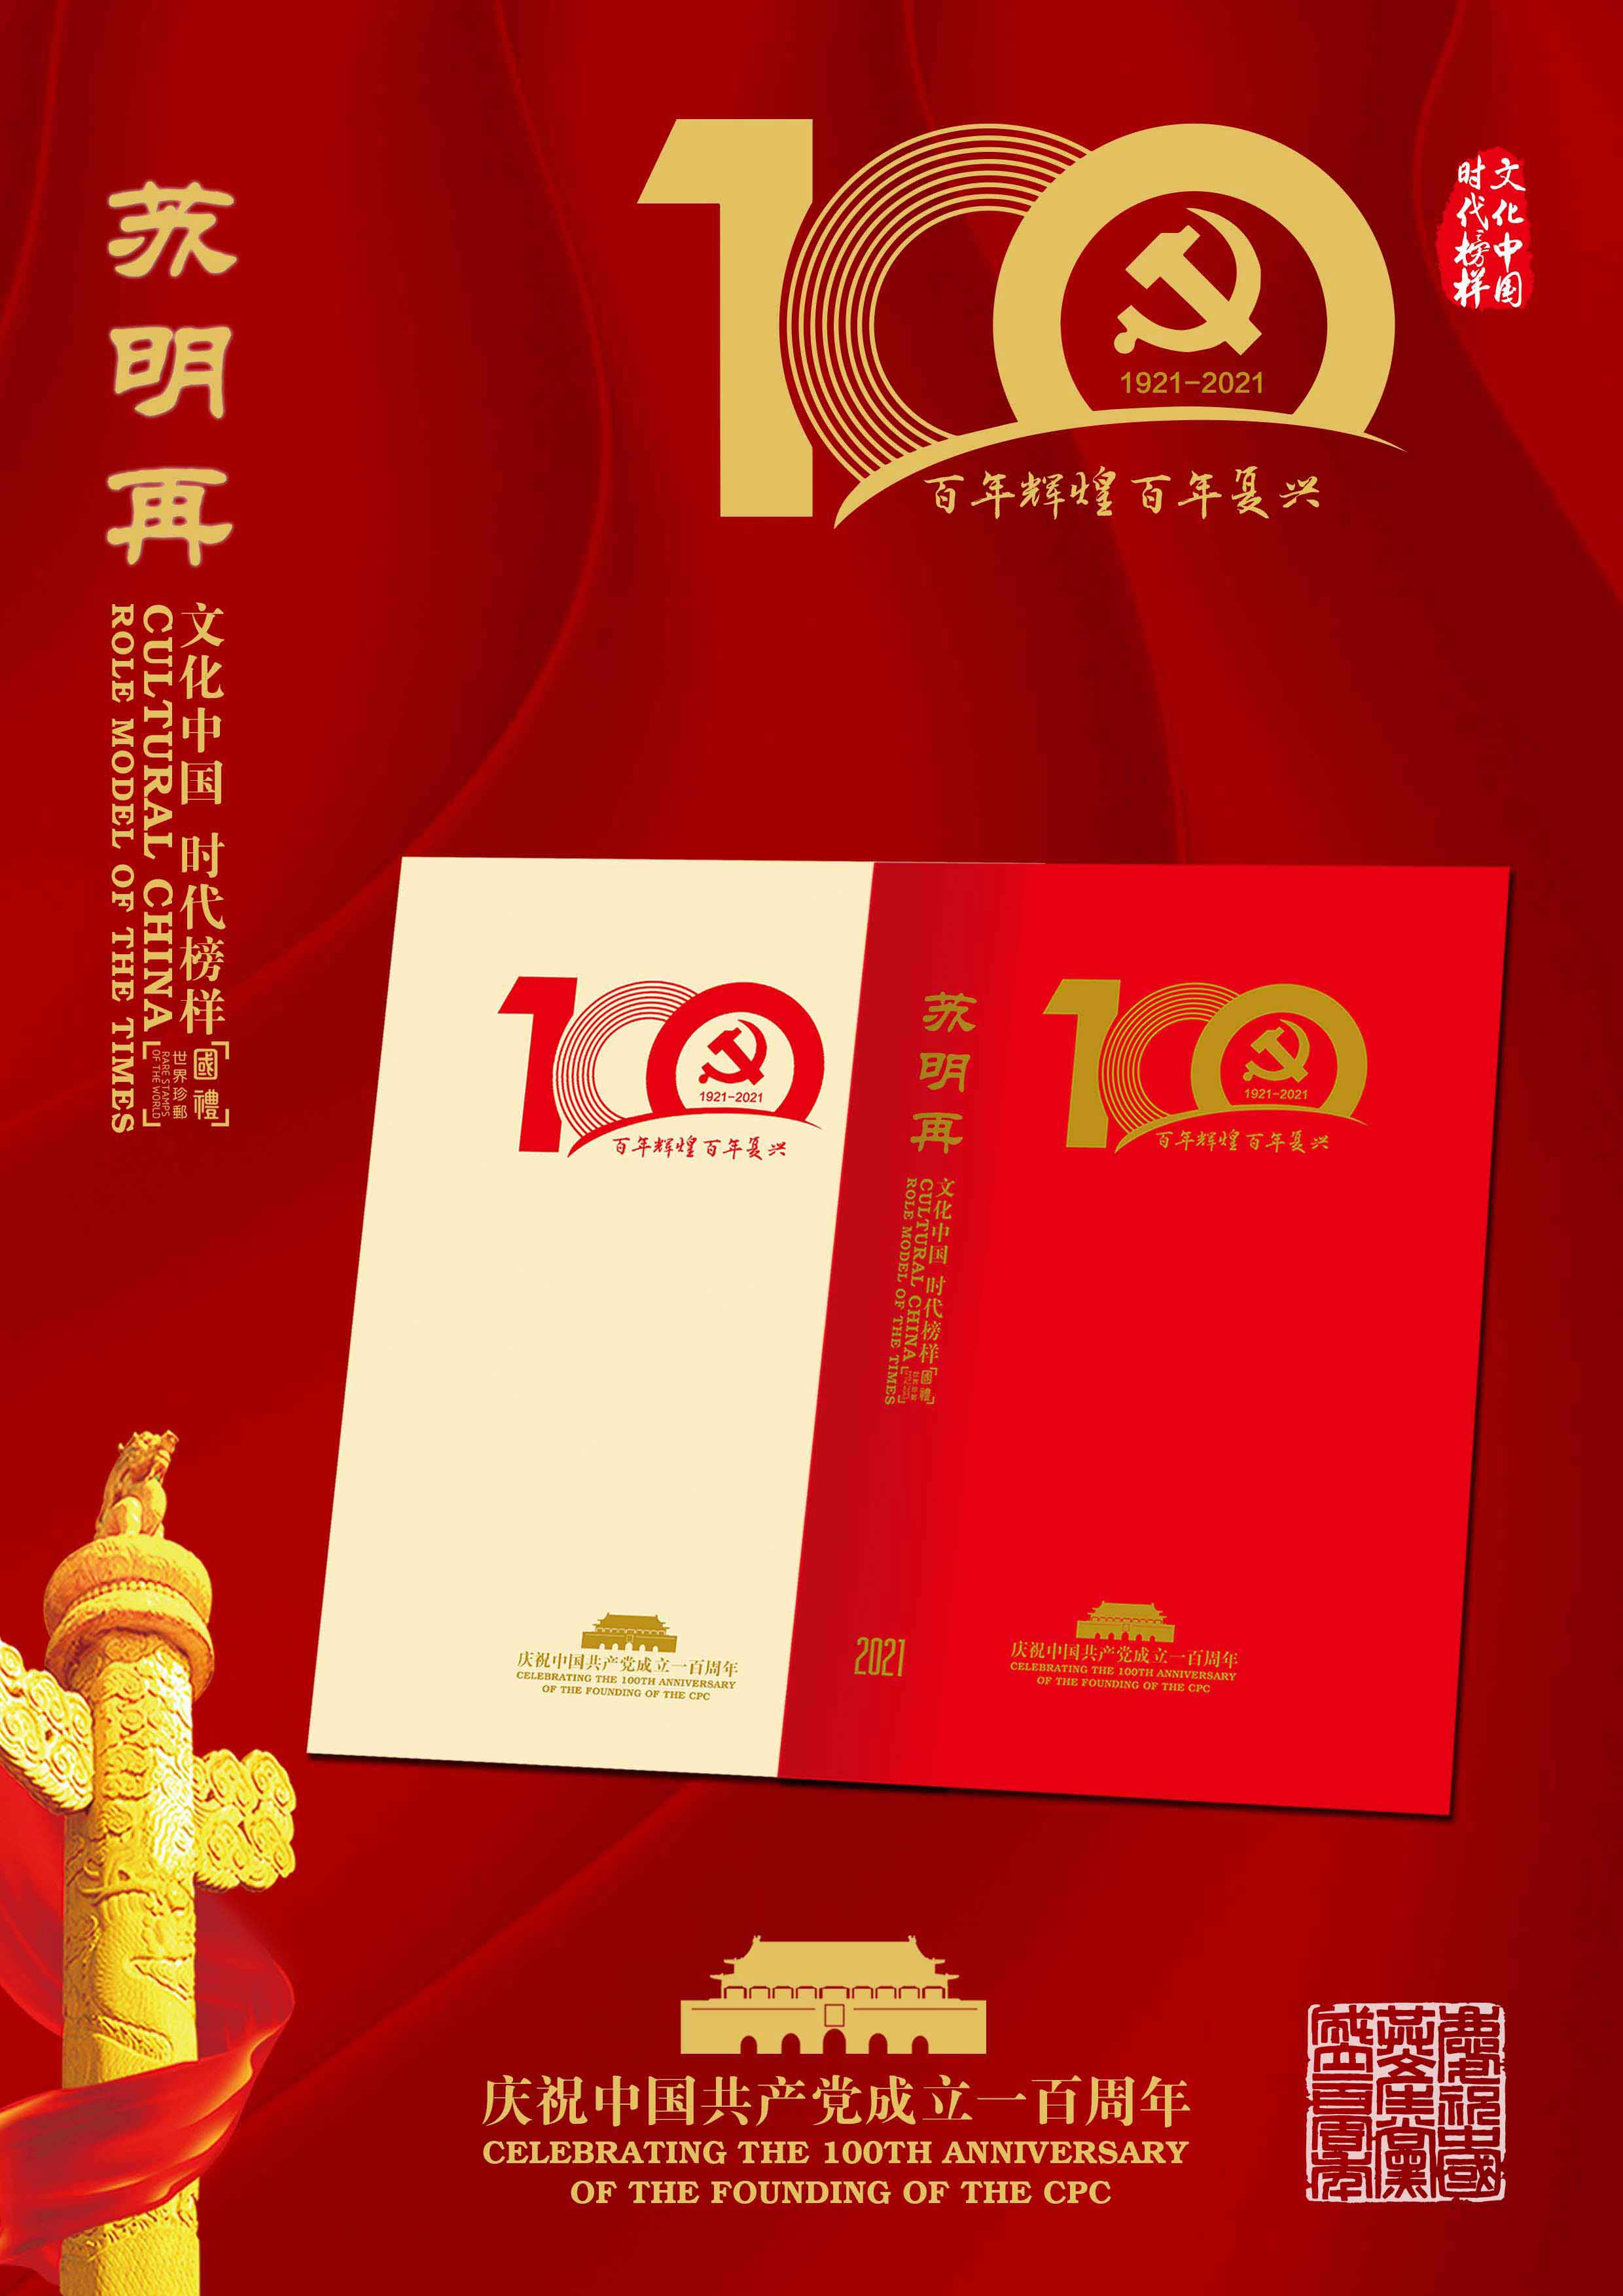 文化中国·时代榜样苏明再系列邮票全球发行